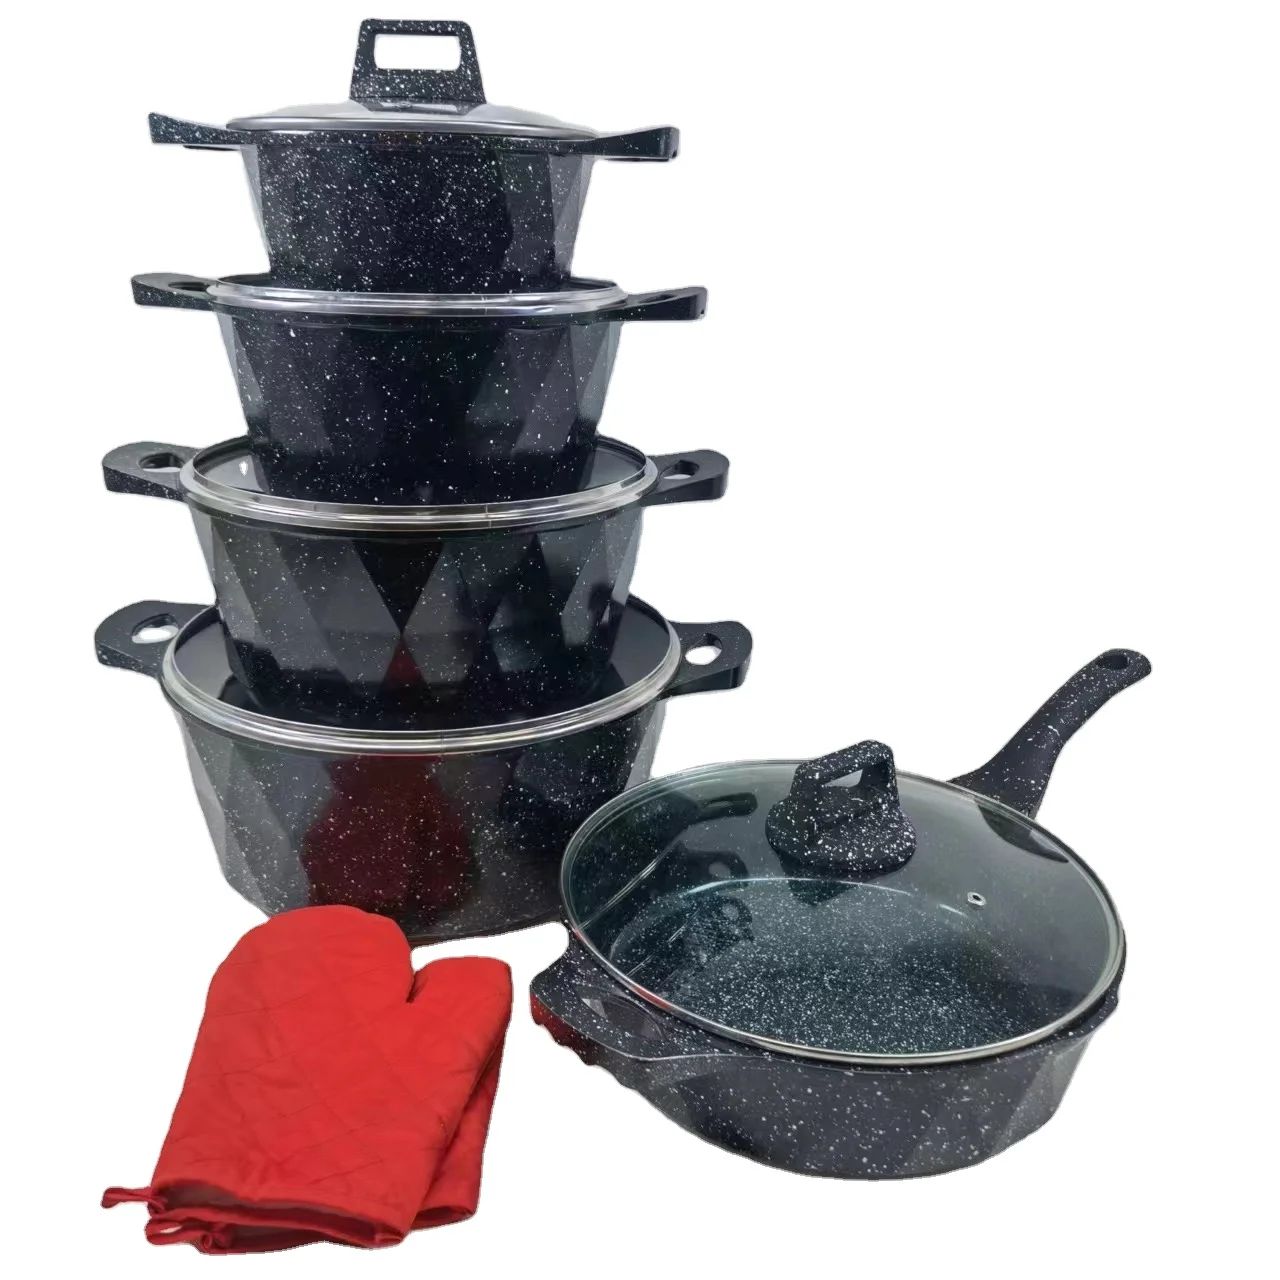 2pcs Cooking Non Stick 20/24/28/32cm Cookware Sets Frying Casserole kitchen pots and pans sets Cookware Sets Granite Aluminum